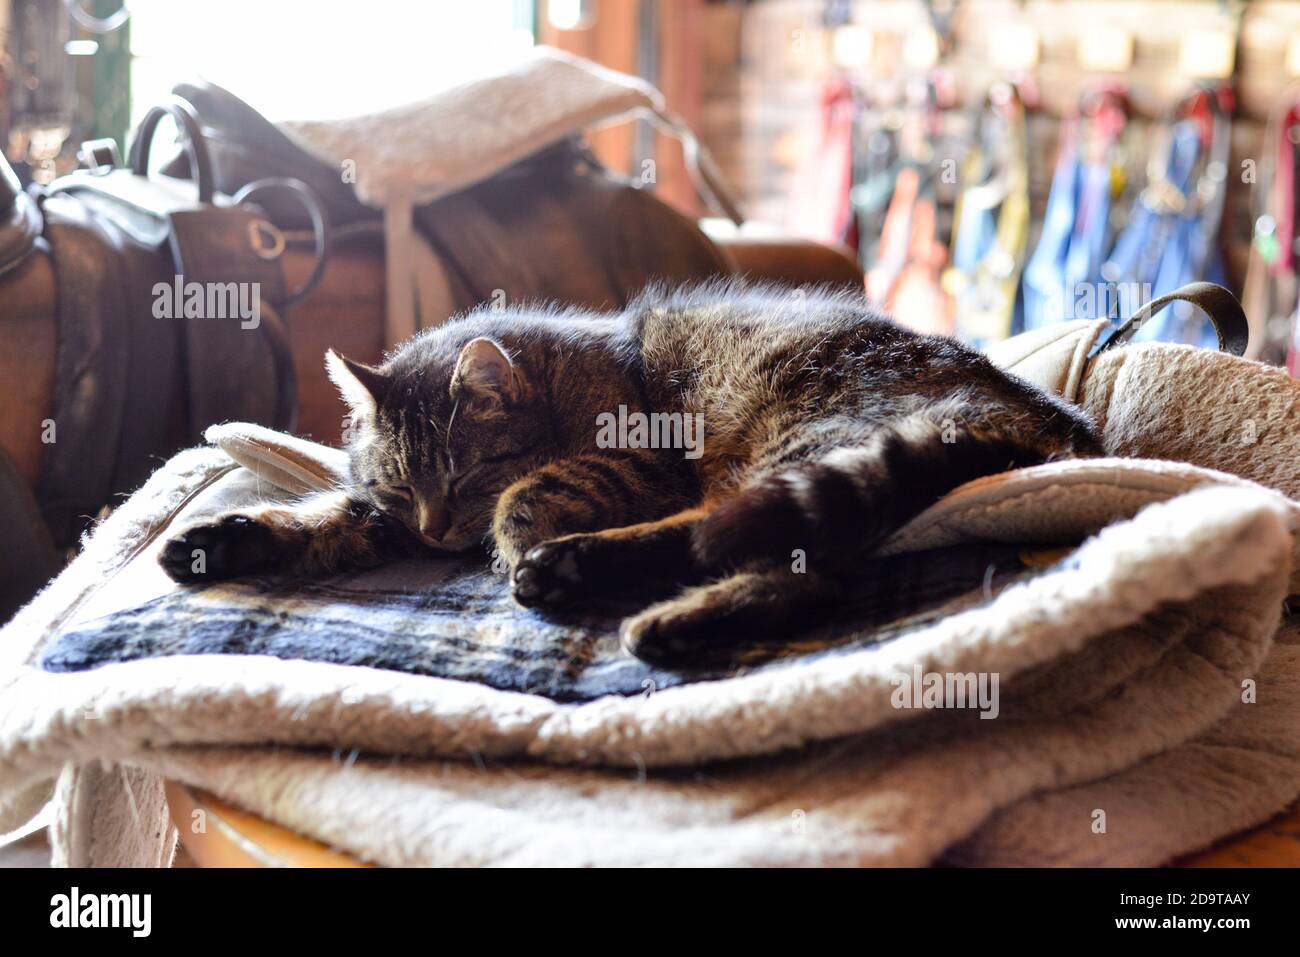 Schläfrige Katze in der Sattelkammer - sleepy cat in the tack room Stock Photo